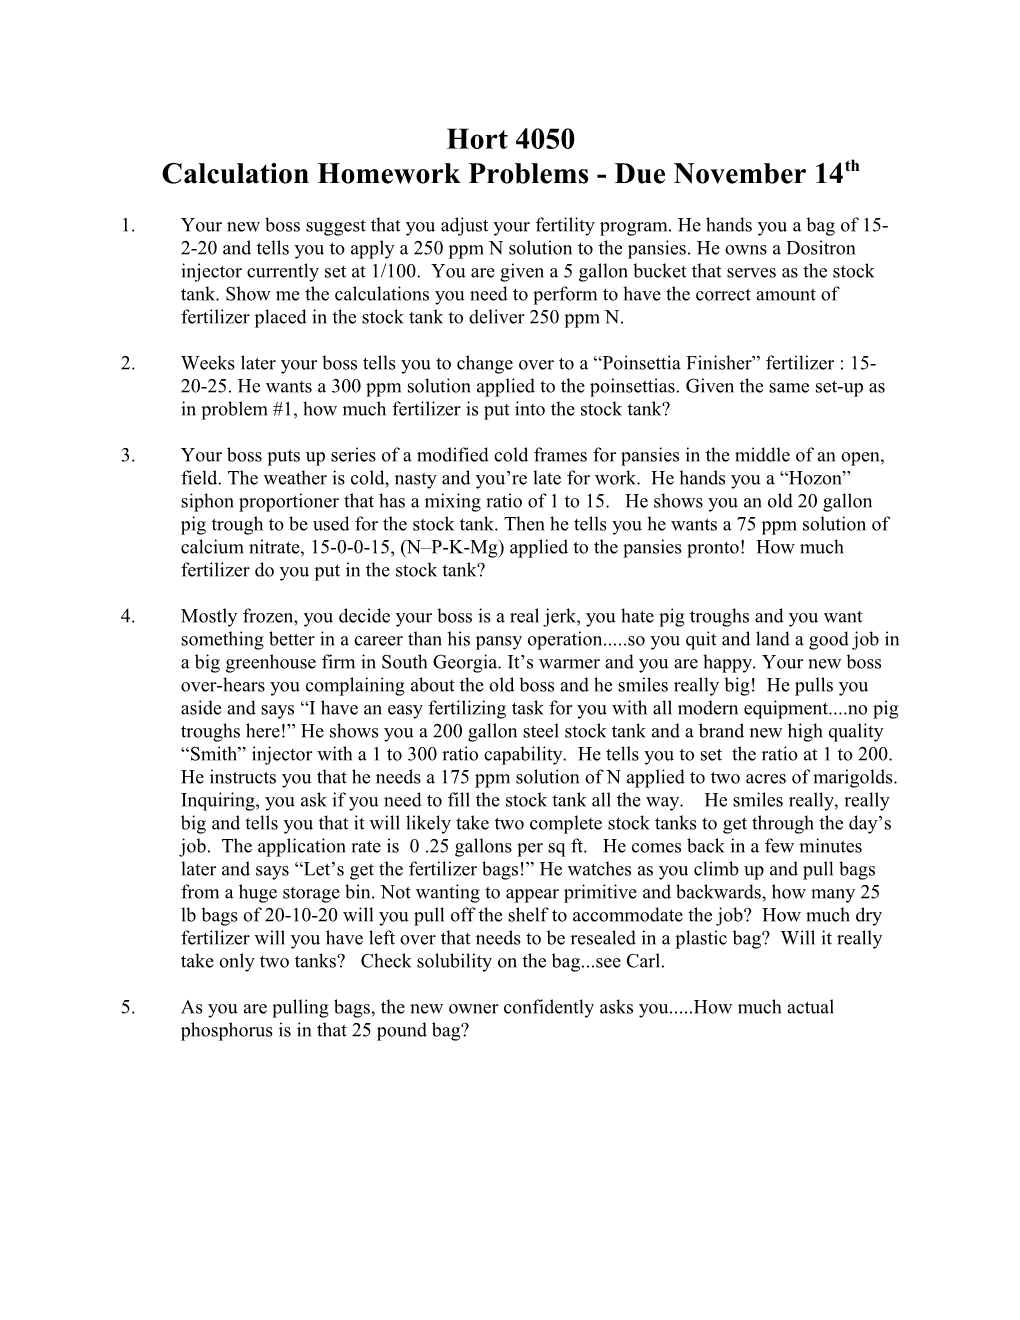 Calculation Homework Problems - Due November 14Th